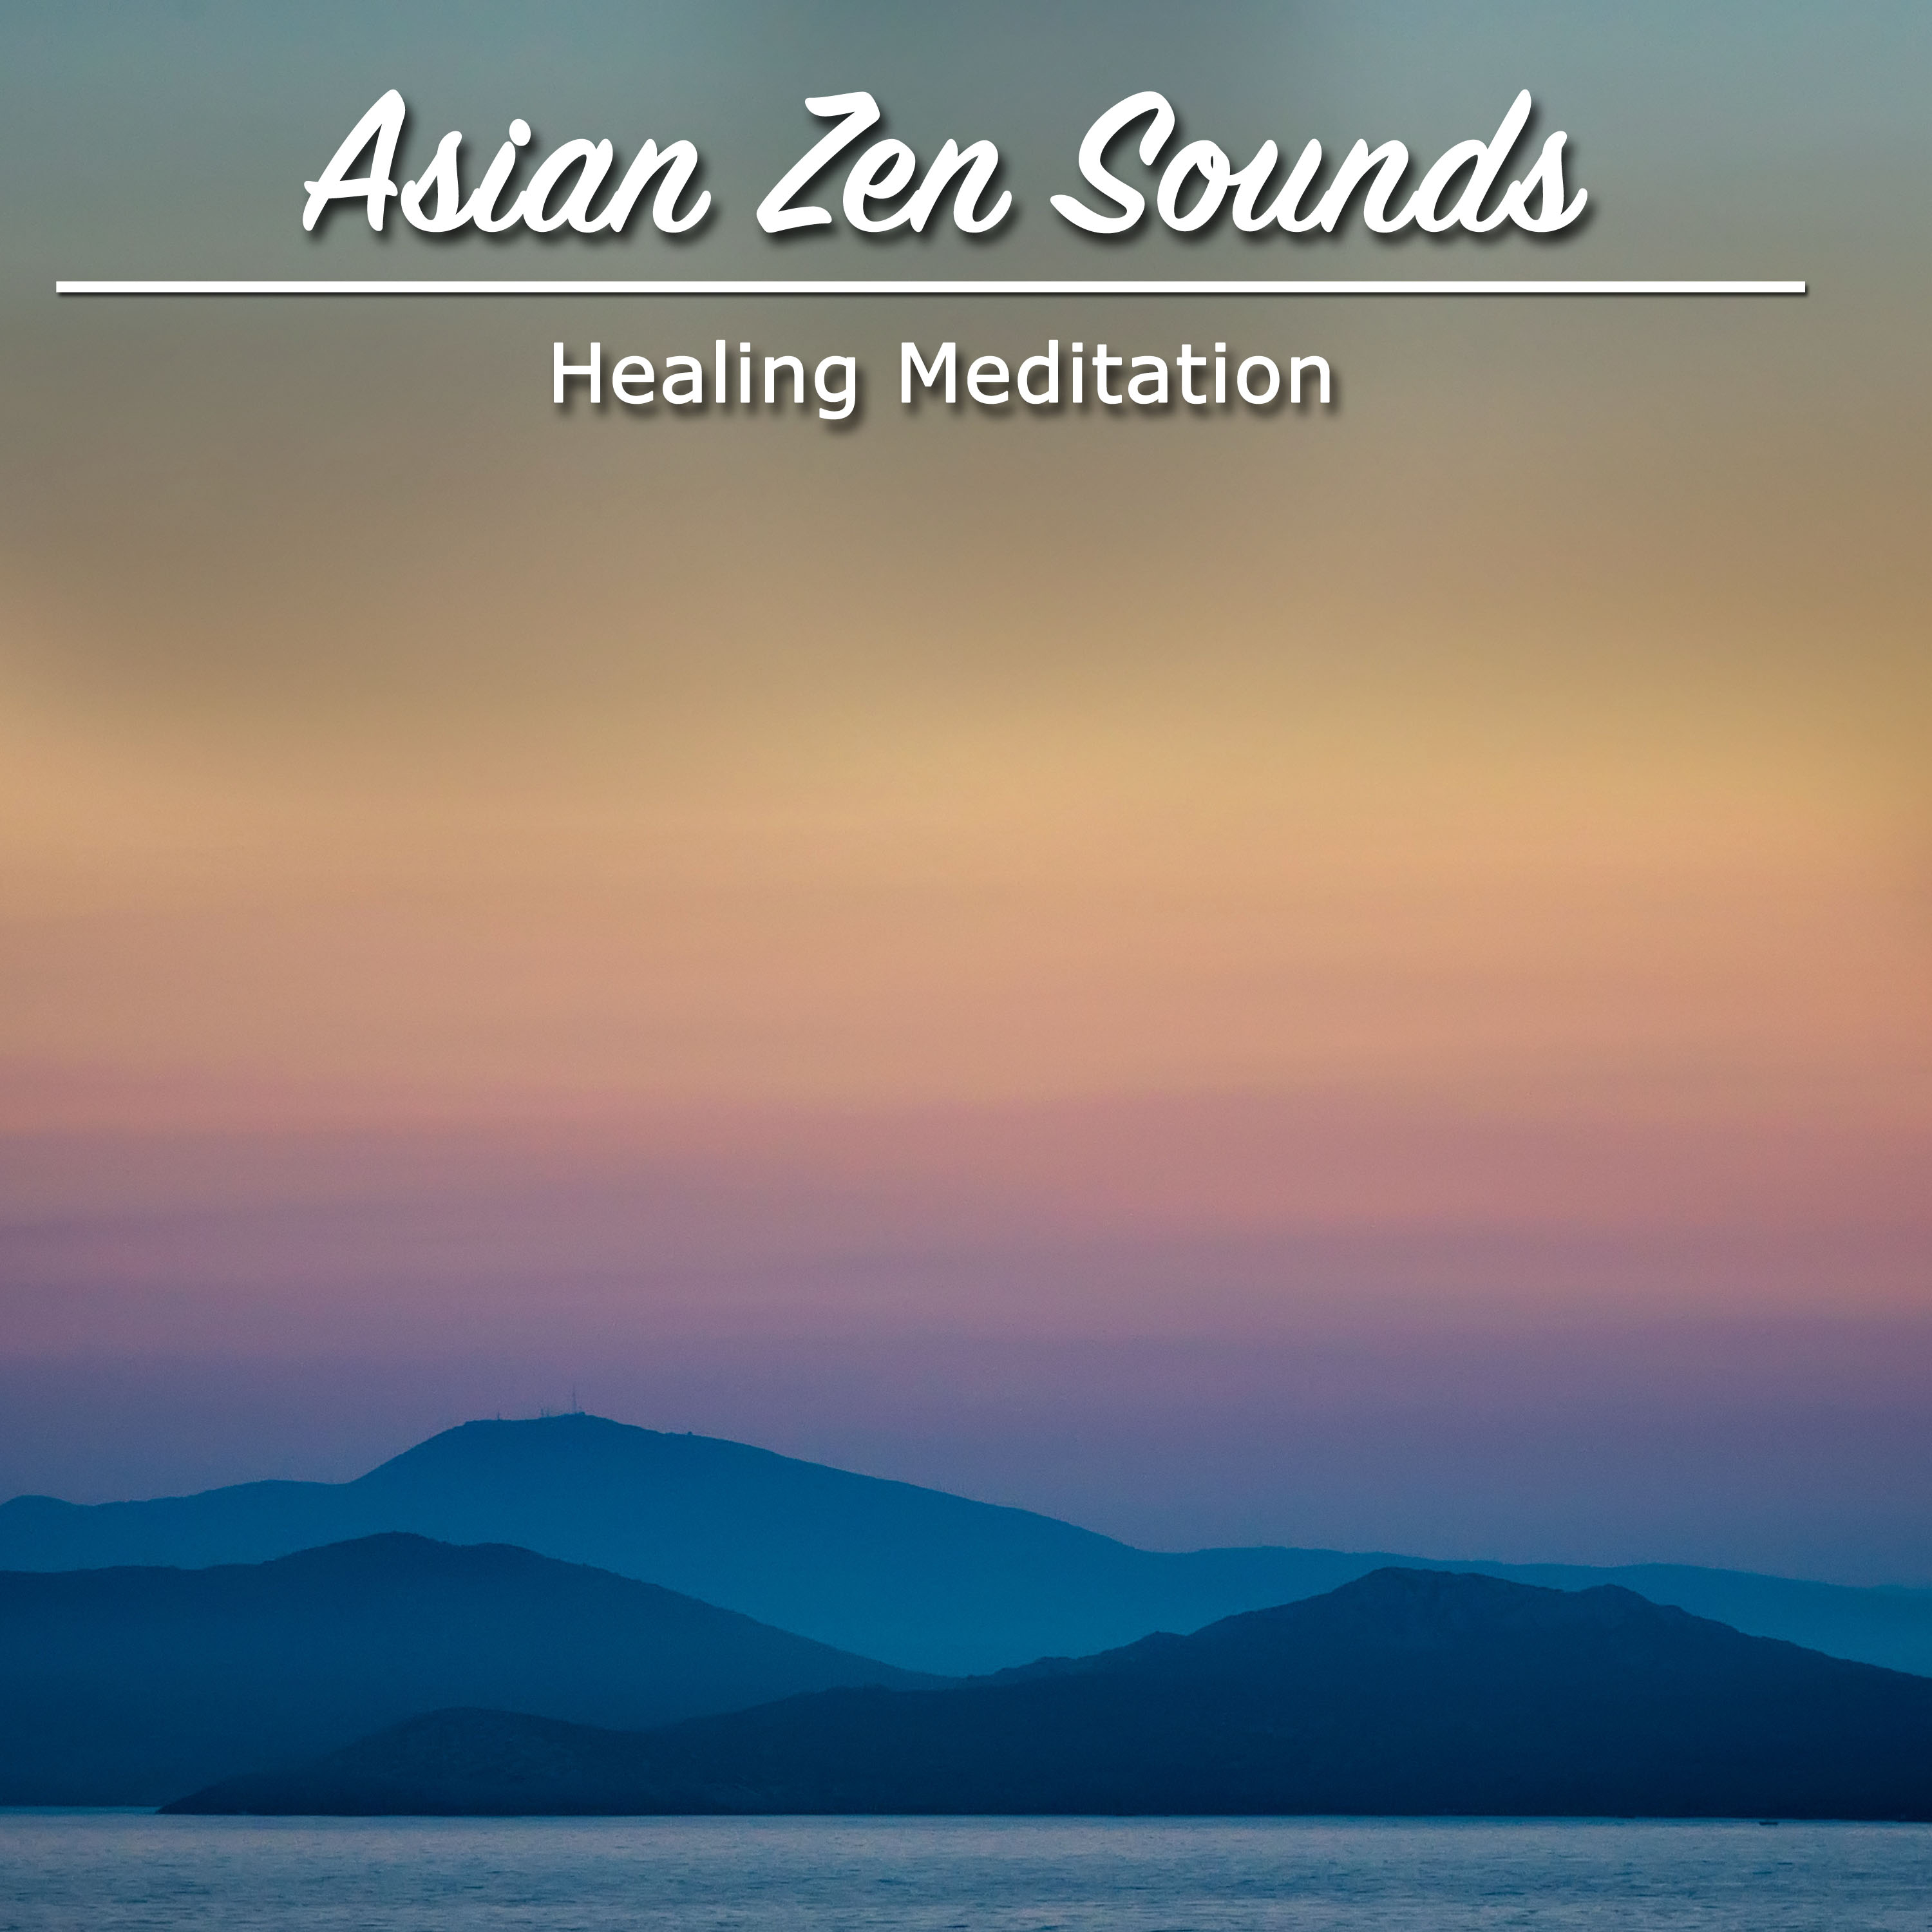 17 Asian Zen Sounds: Healing Meditation